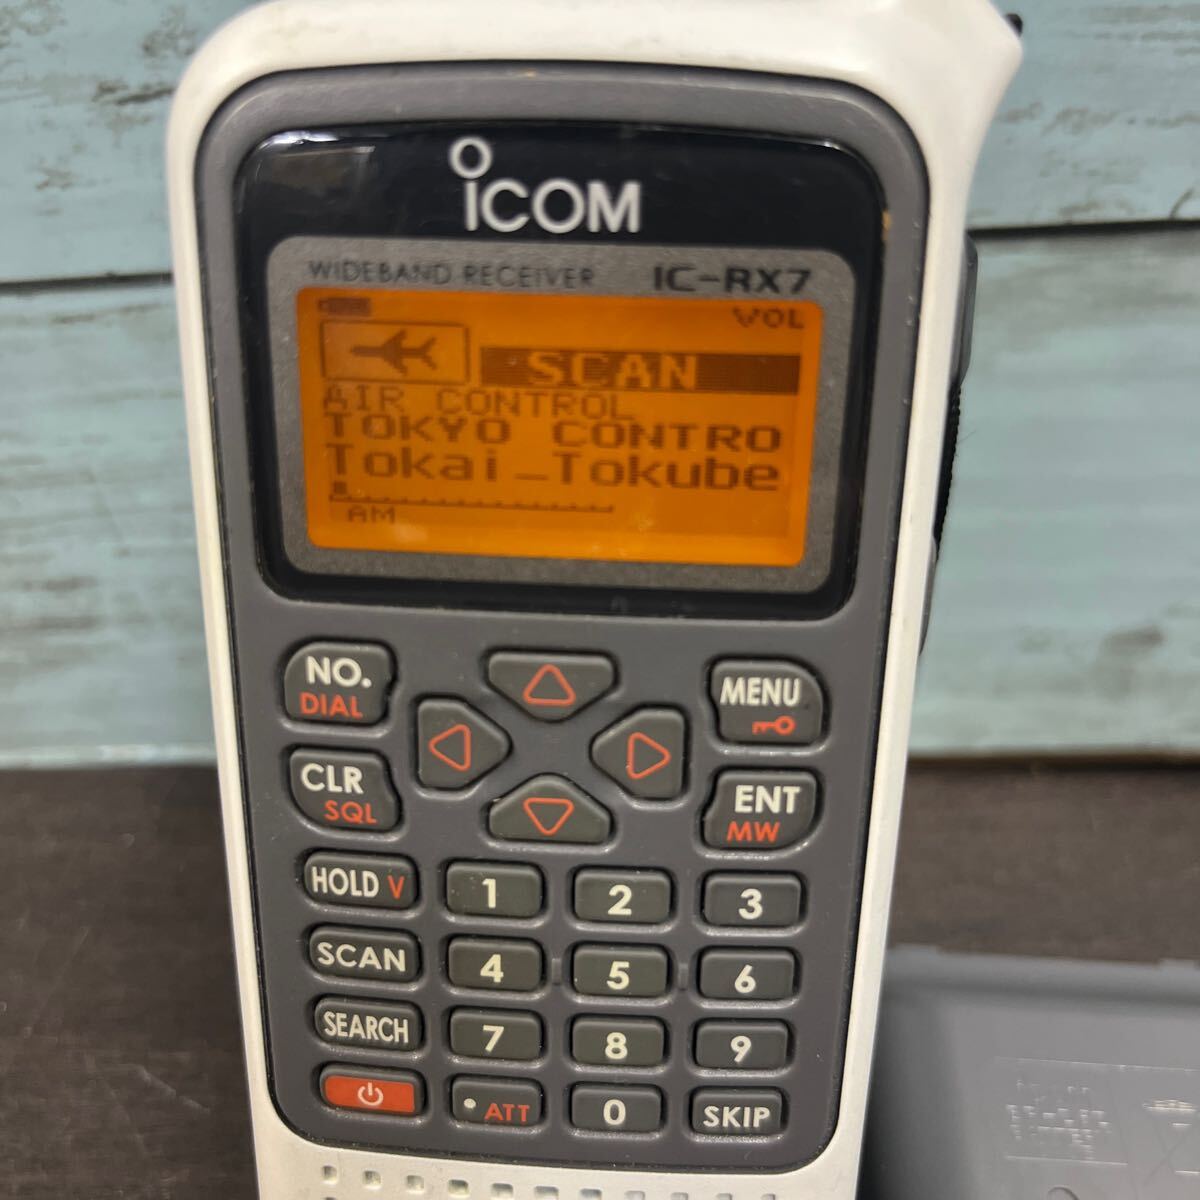 *A901 ICOM Icom IC-RX7 широкий obi район портативный ресивер диапазонный ресивер радиолюбительская связь рабочий товар 